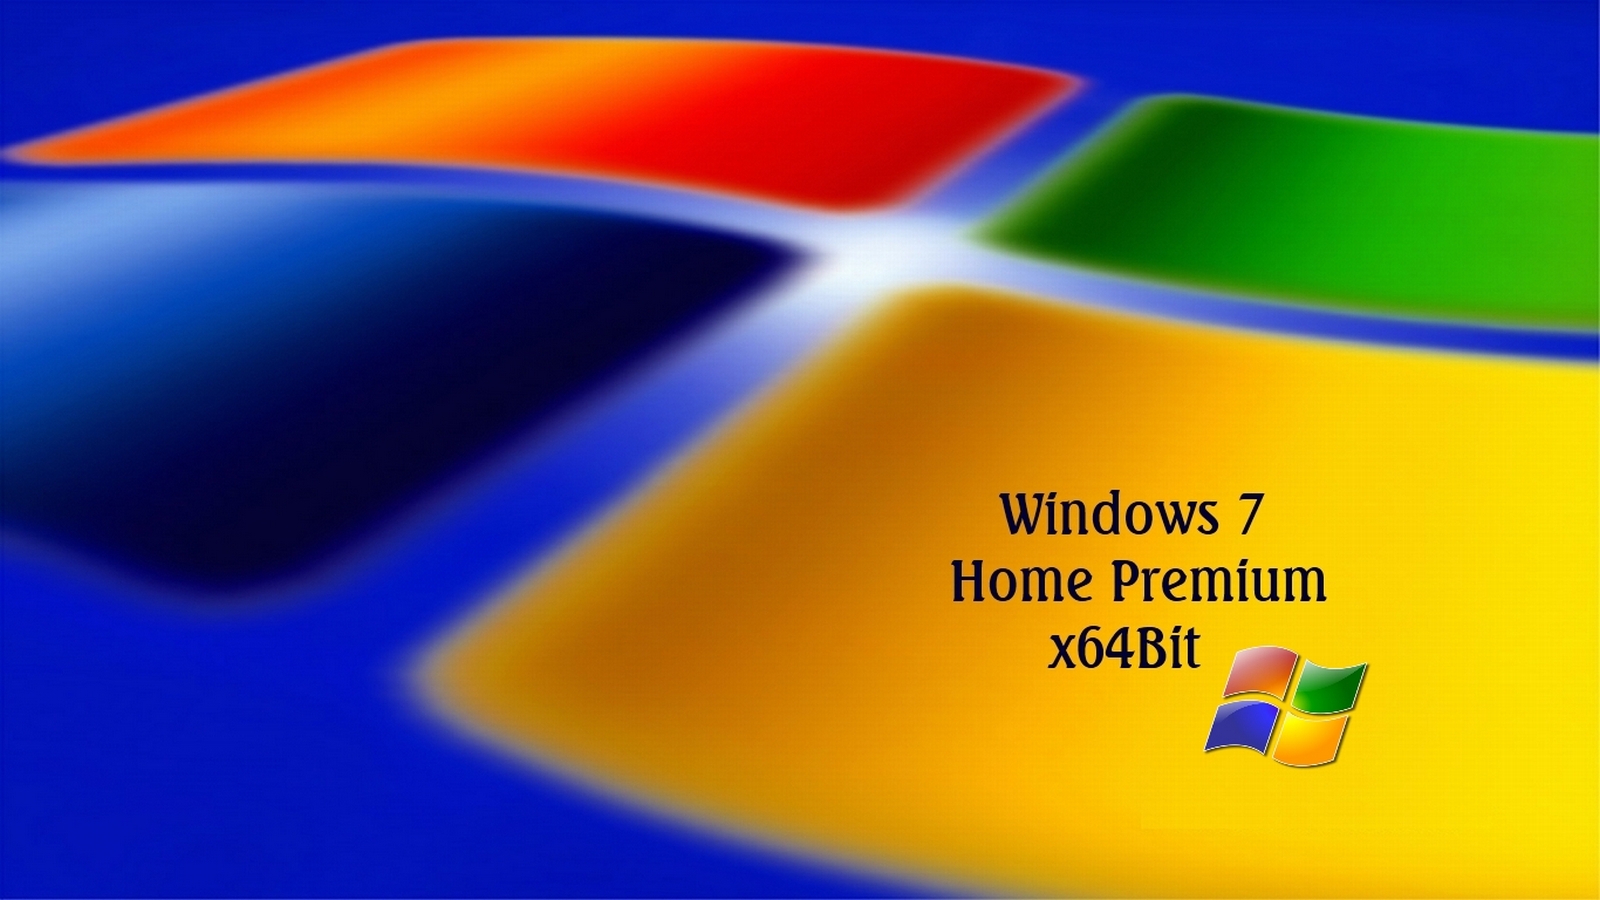 Wallpaper Windows 7 64 bit - WallpaperSafari